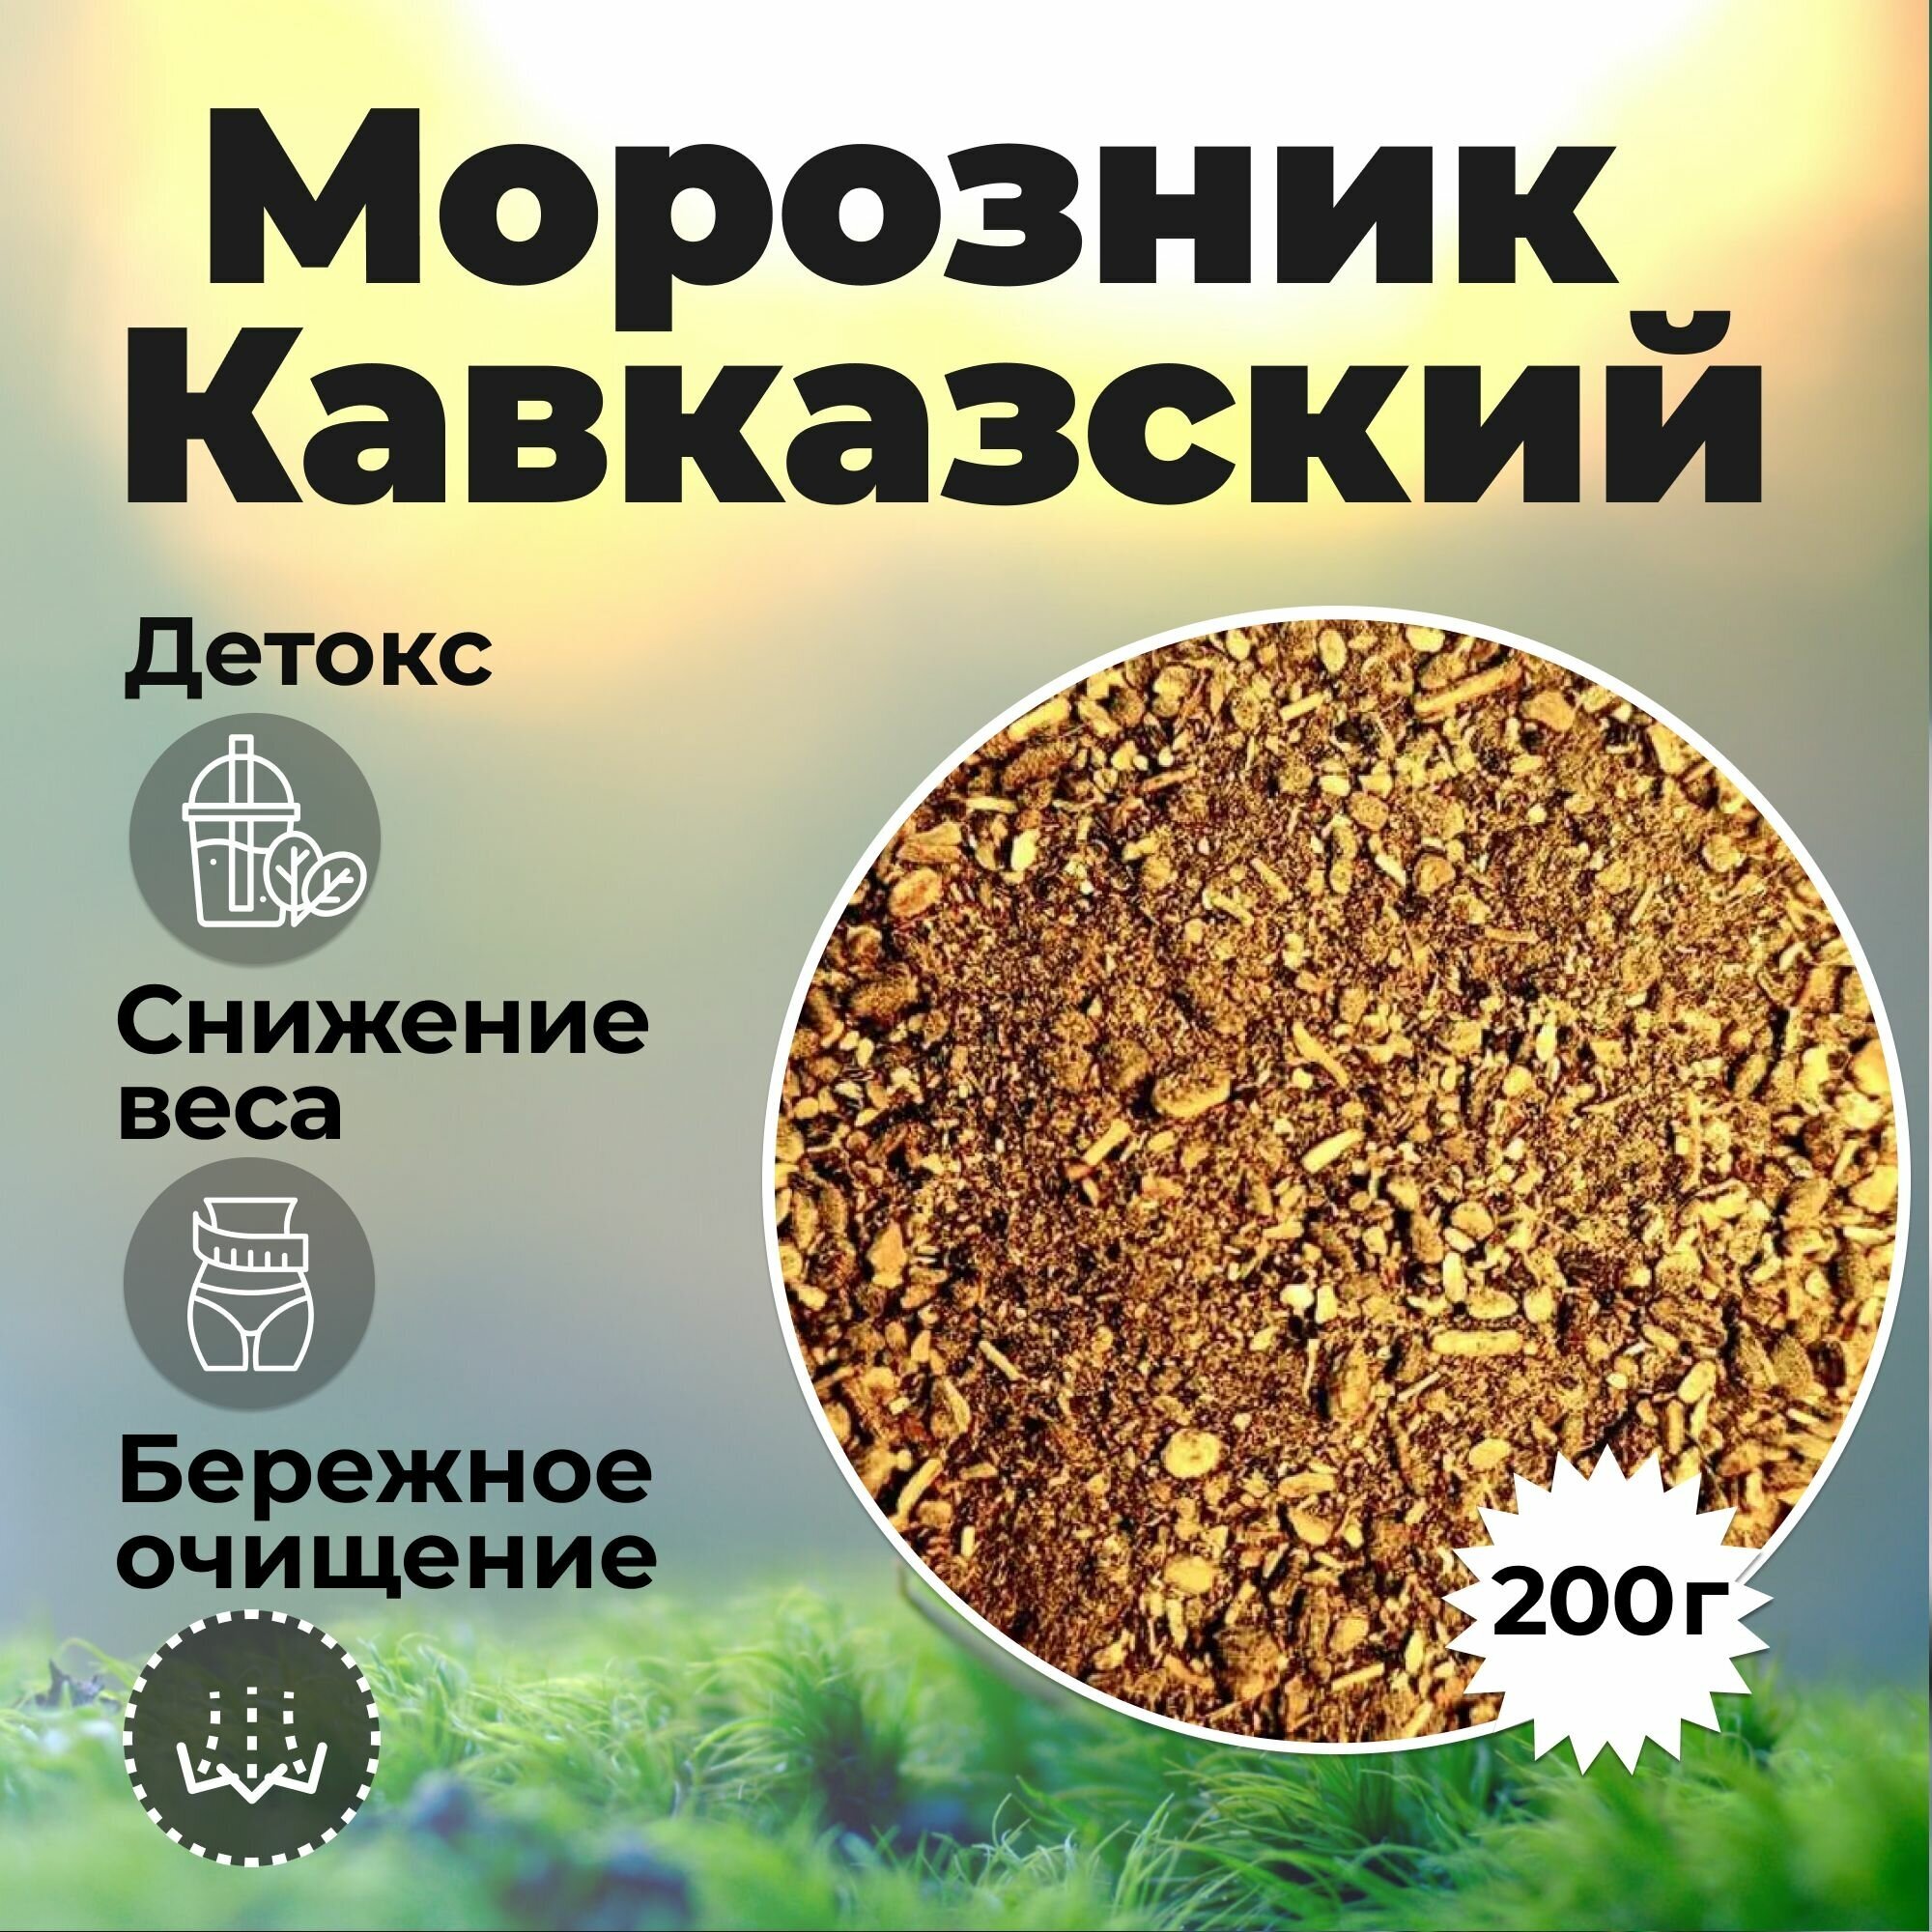 Травяной чай "Морозник кавказский" для похудения, в подарок мерная ложечка, 200 гр